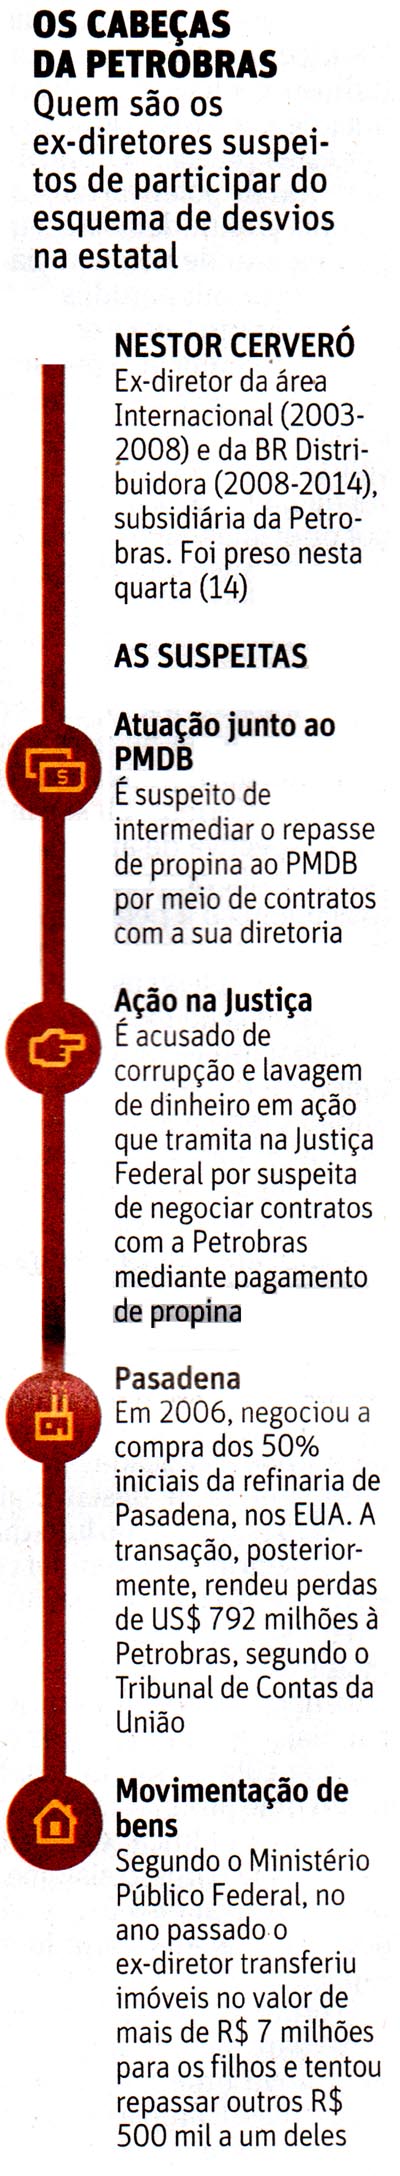 Folha de So Paulo - 15/01/2015 - PETROLO: Os cabeas da Petrobras